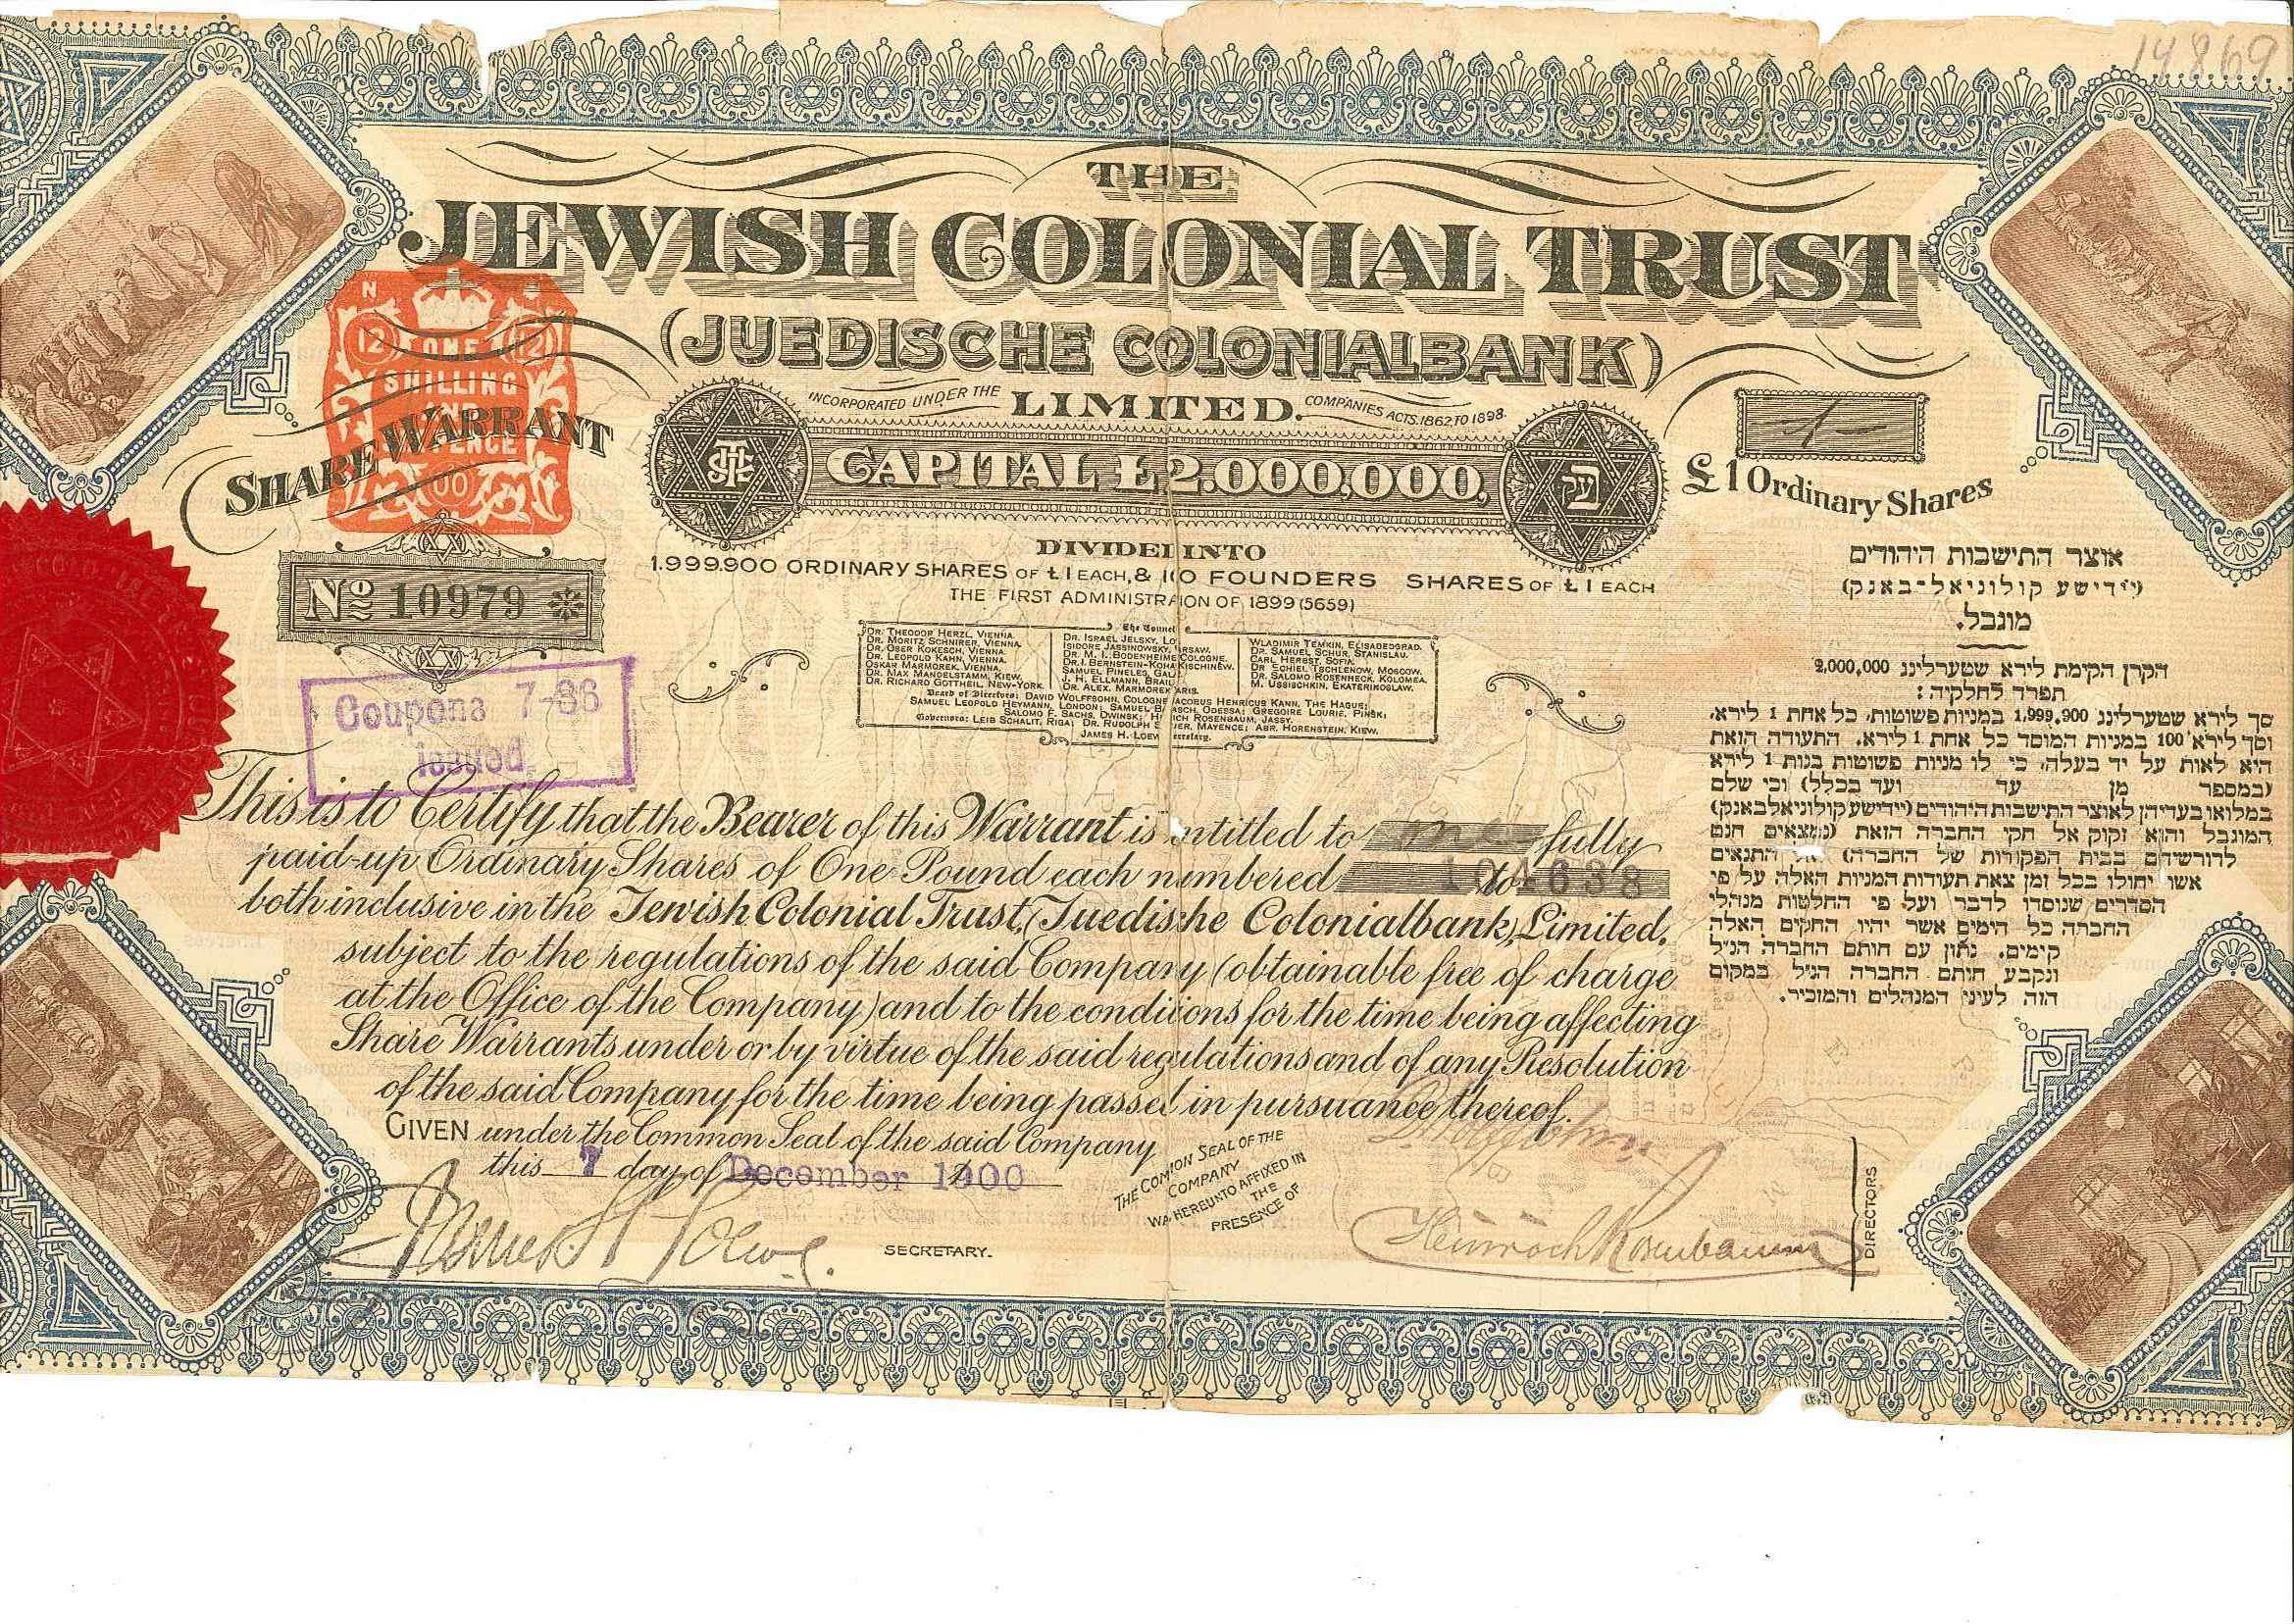 Акция Еврейского Колониального Треста (Jewish Colonial Trust)